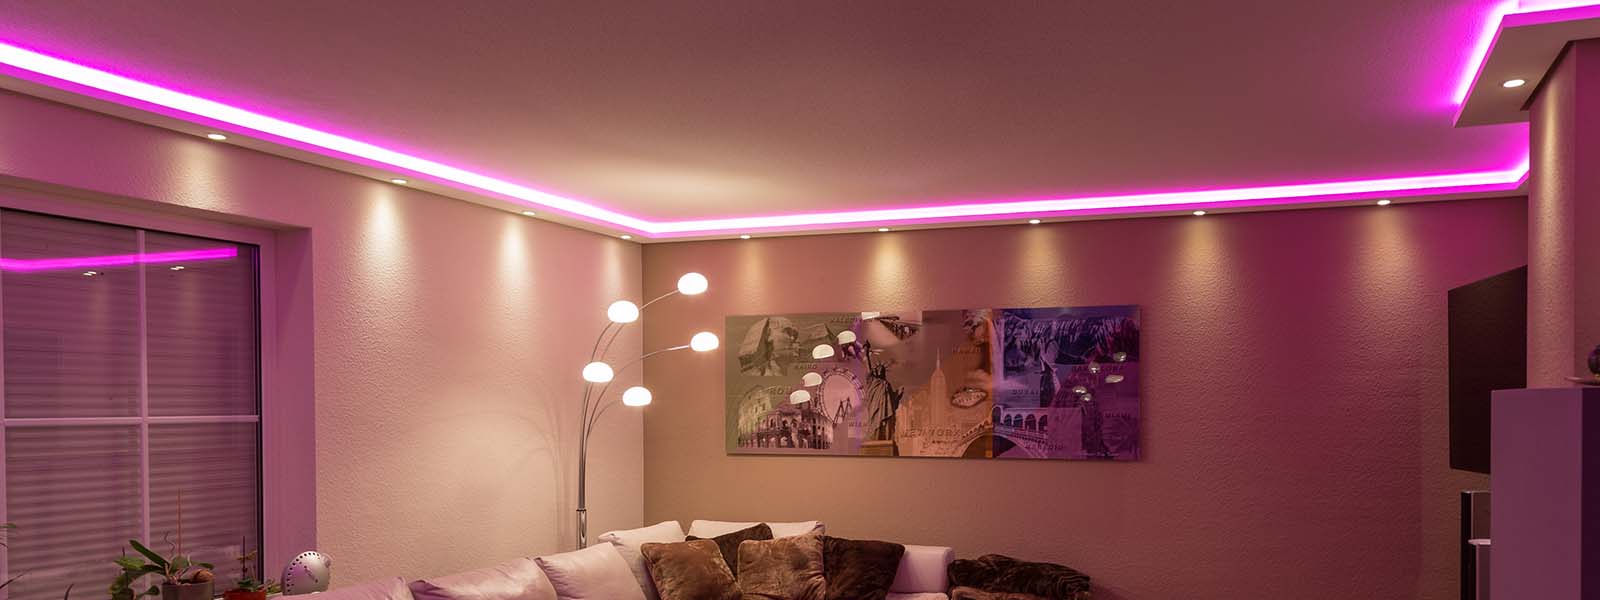 Lichtprofile für Wand- und Deckenbeleuchtung in großer Auswahl hier online kaufen